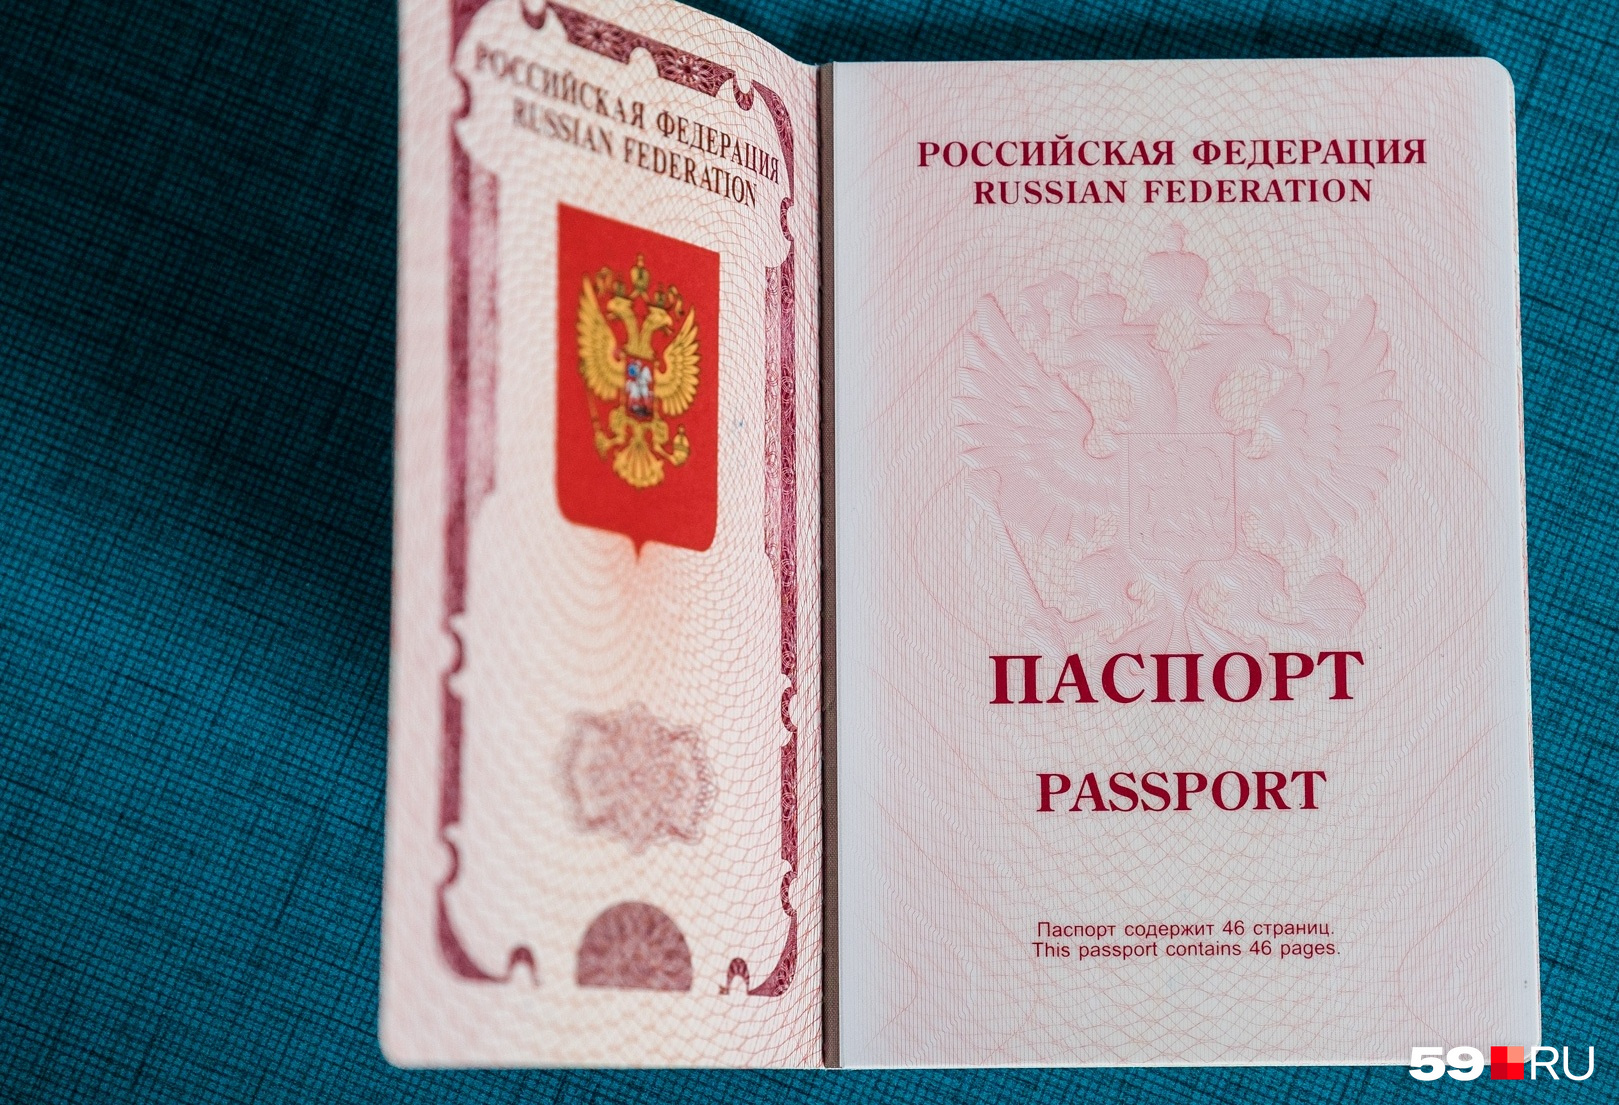 В таком паспорте 46 страниц: на 10 больше, чем в документе старого образца